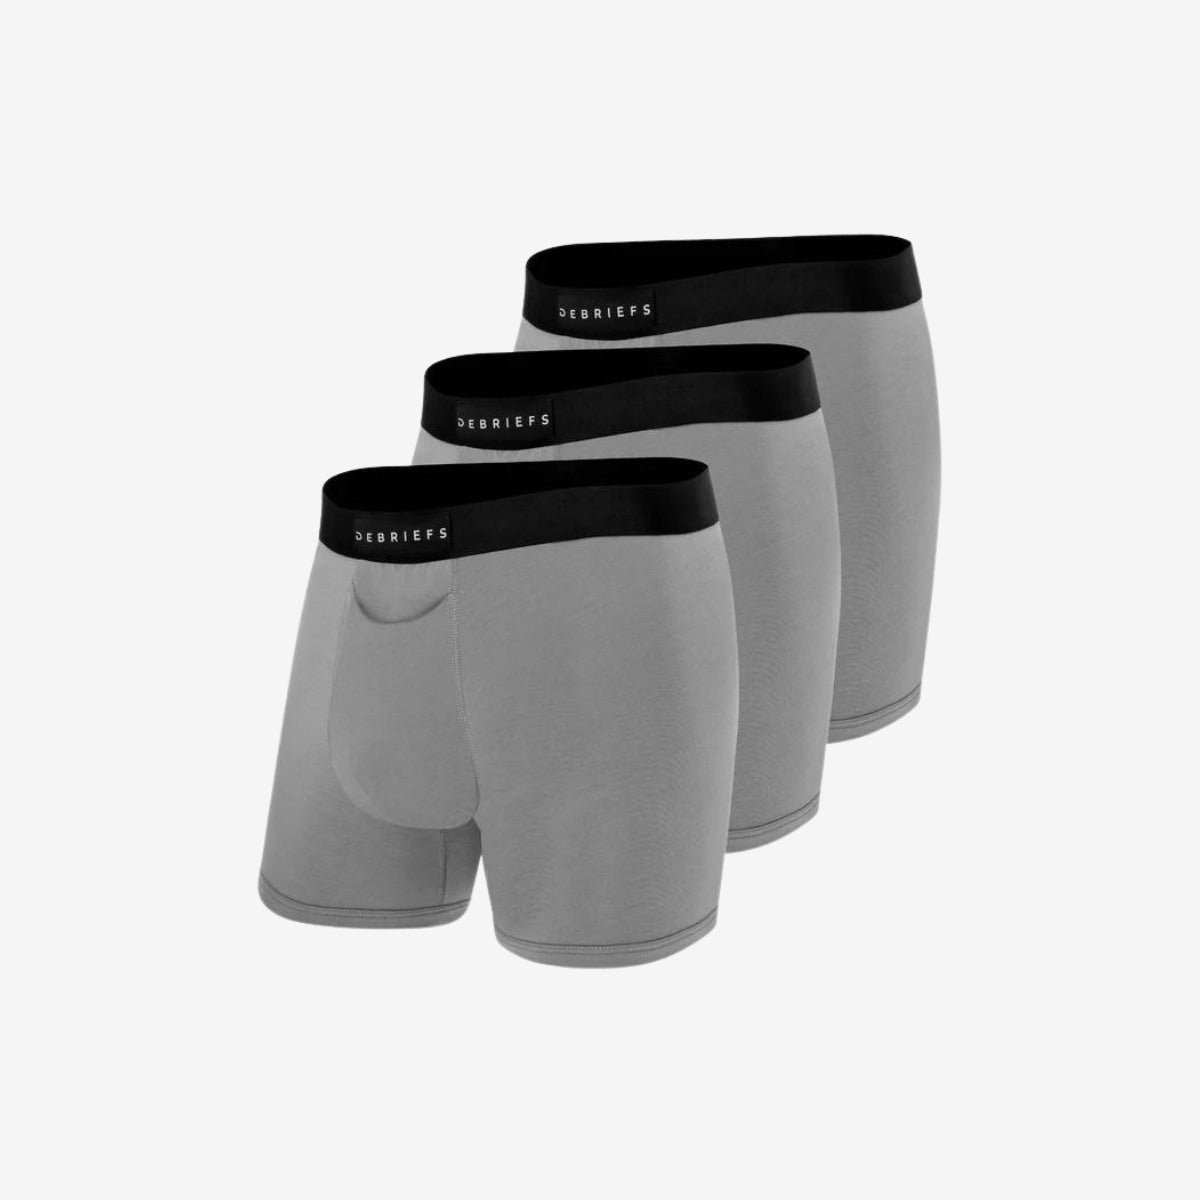 Mens Boxer Briefs Underwear Online 3 pack - Grey